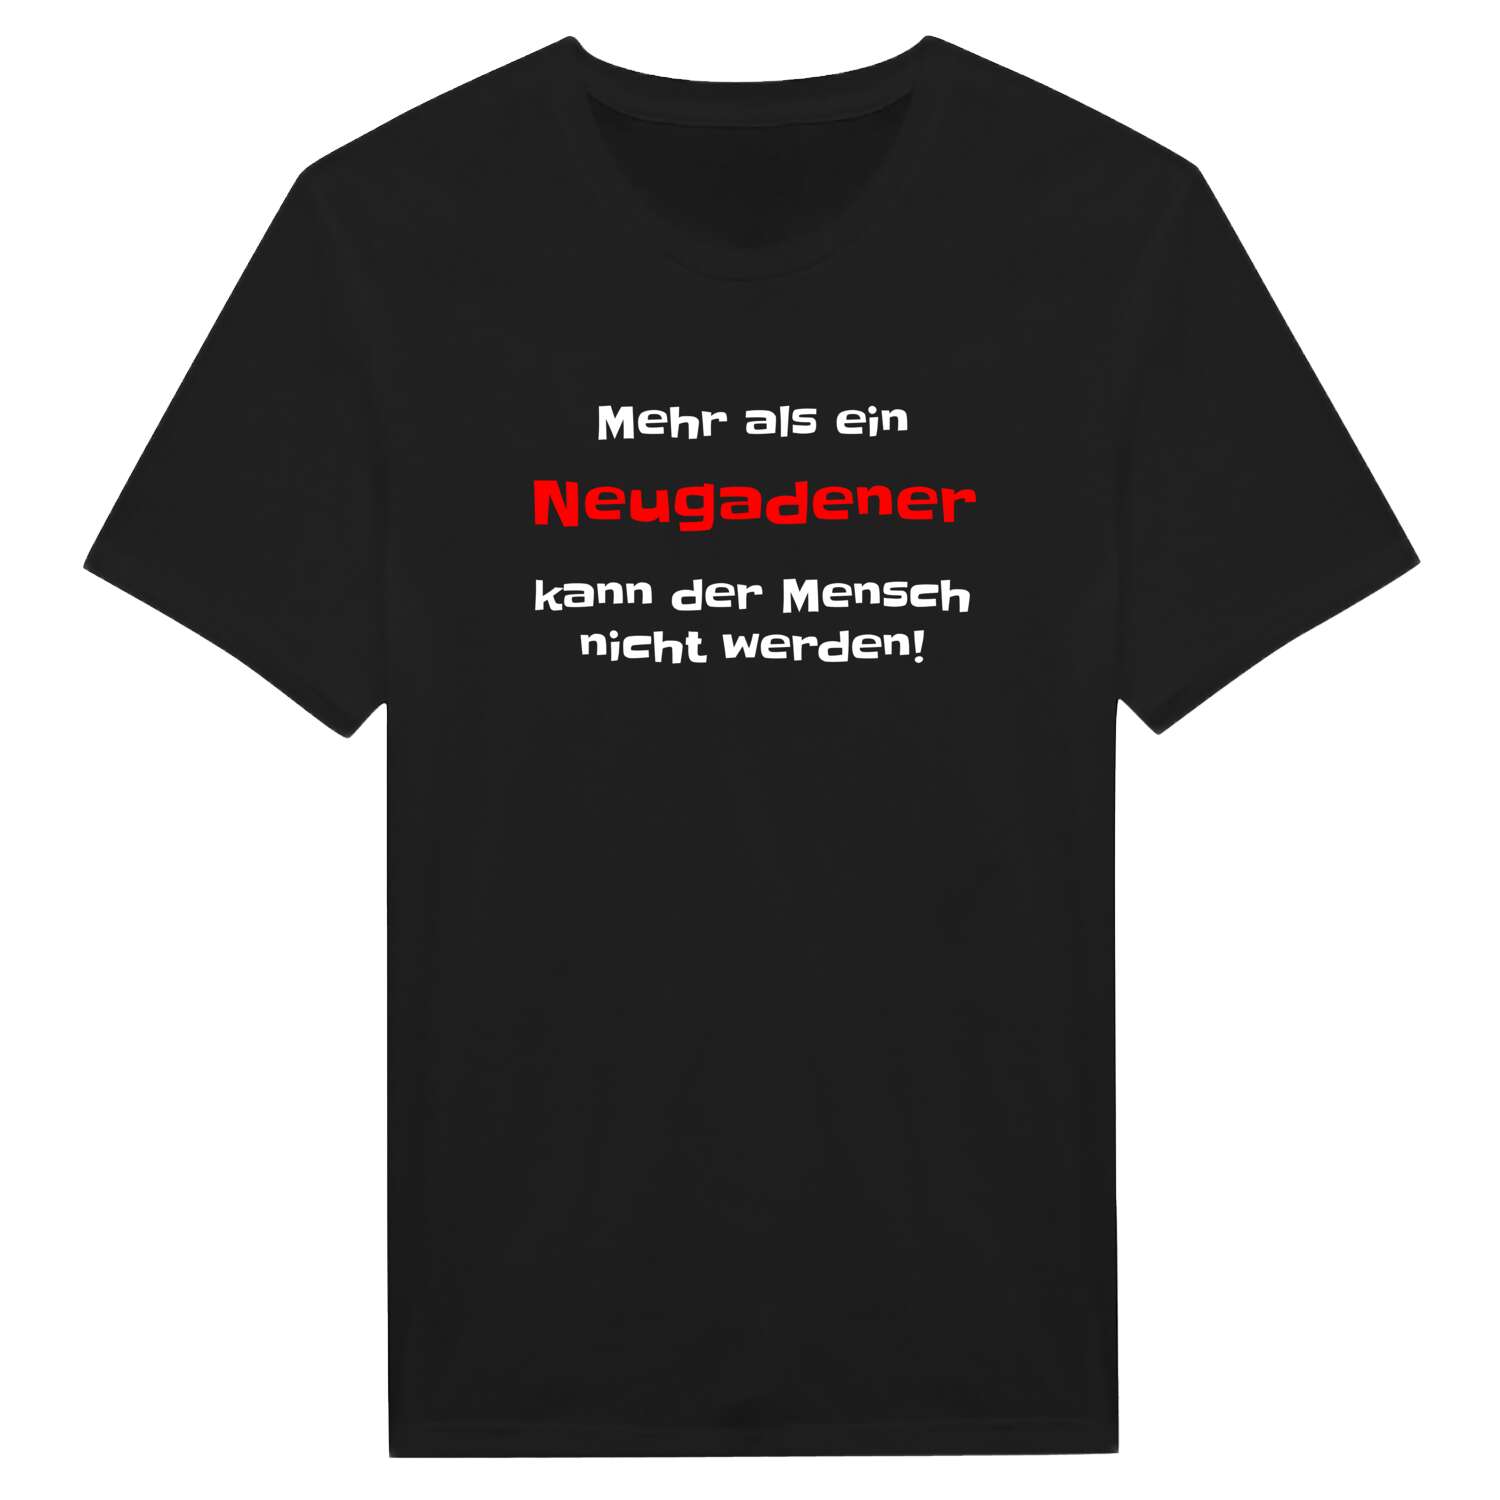 Neugaden T-Shirt »Mehr als ein«